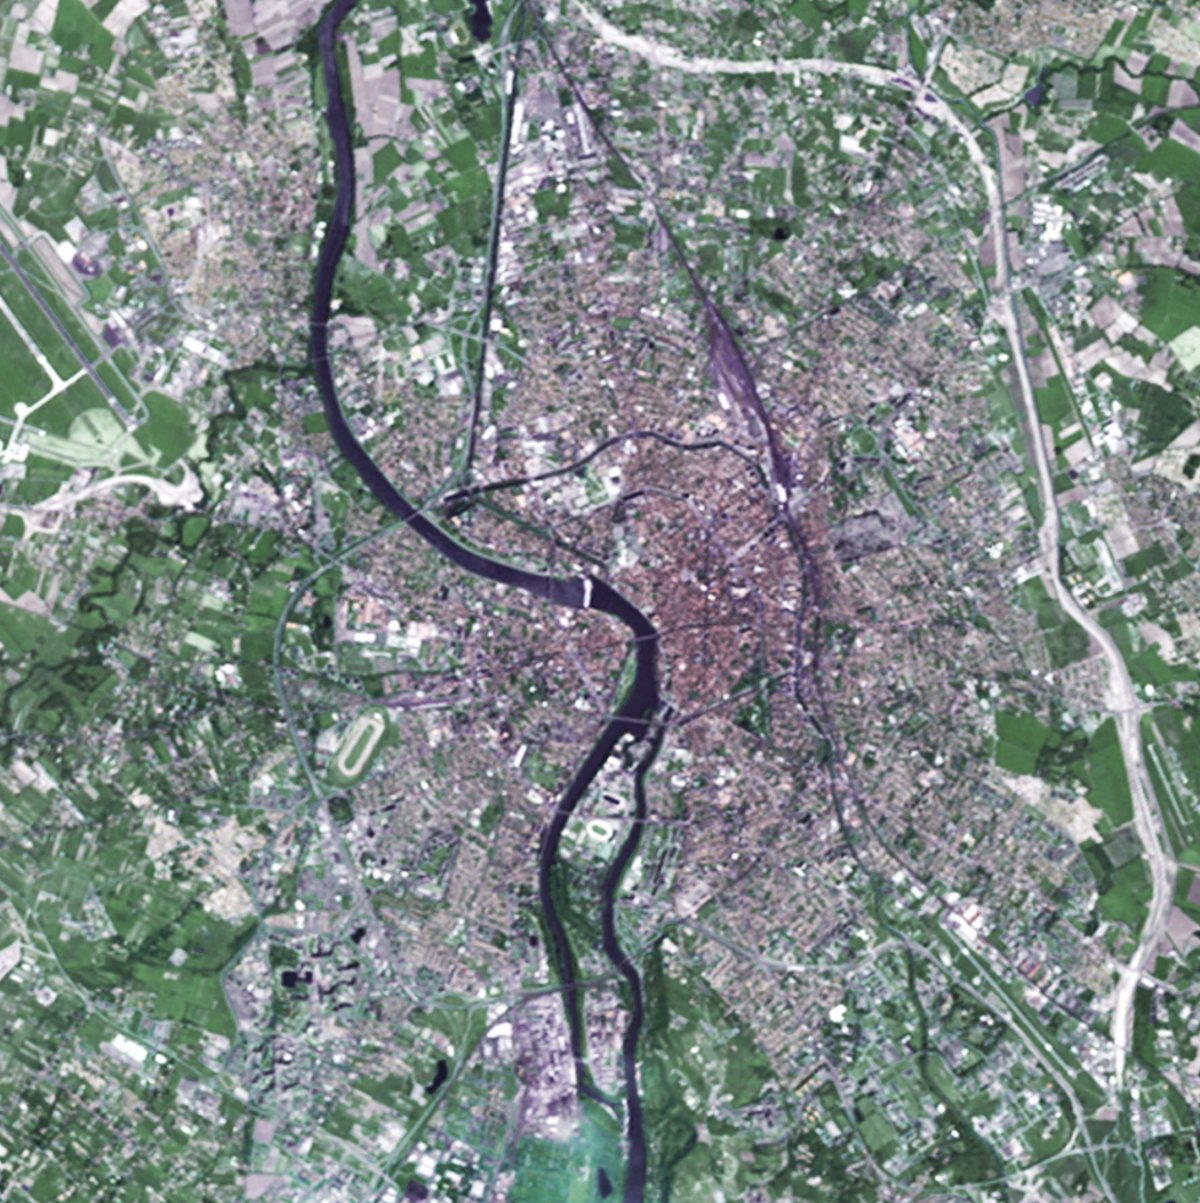 30 ans de SPOT - Toulouse - Ville rose - Capitale européenne du spatial - évolution - Spot 1 - Mai 1986 - CNES - Airbus DS